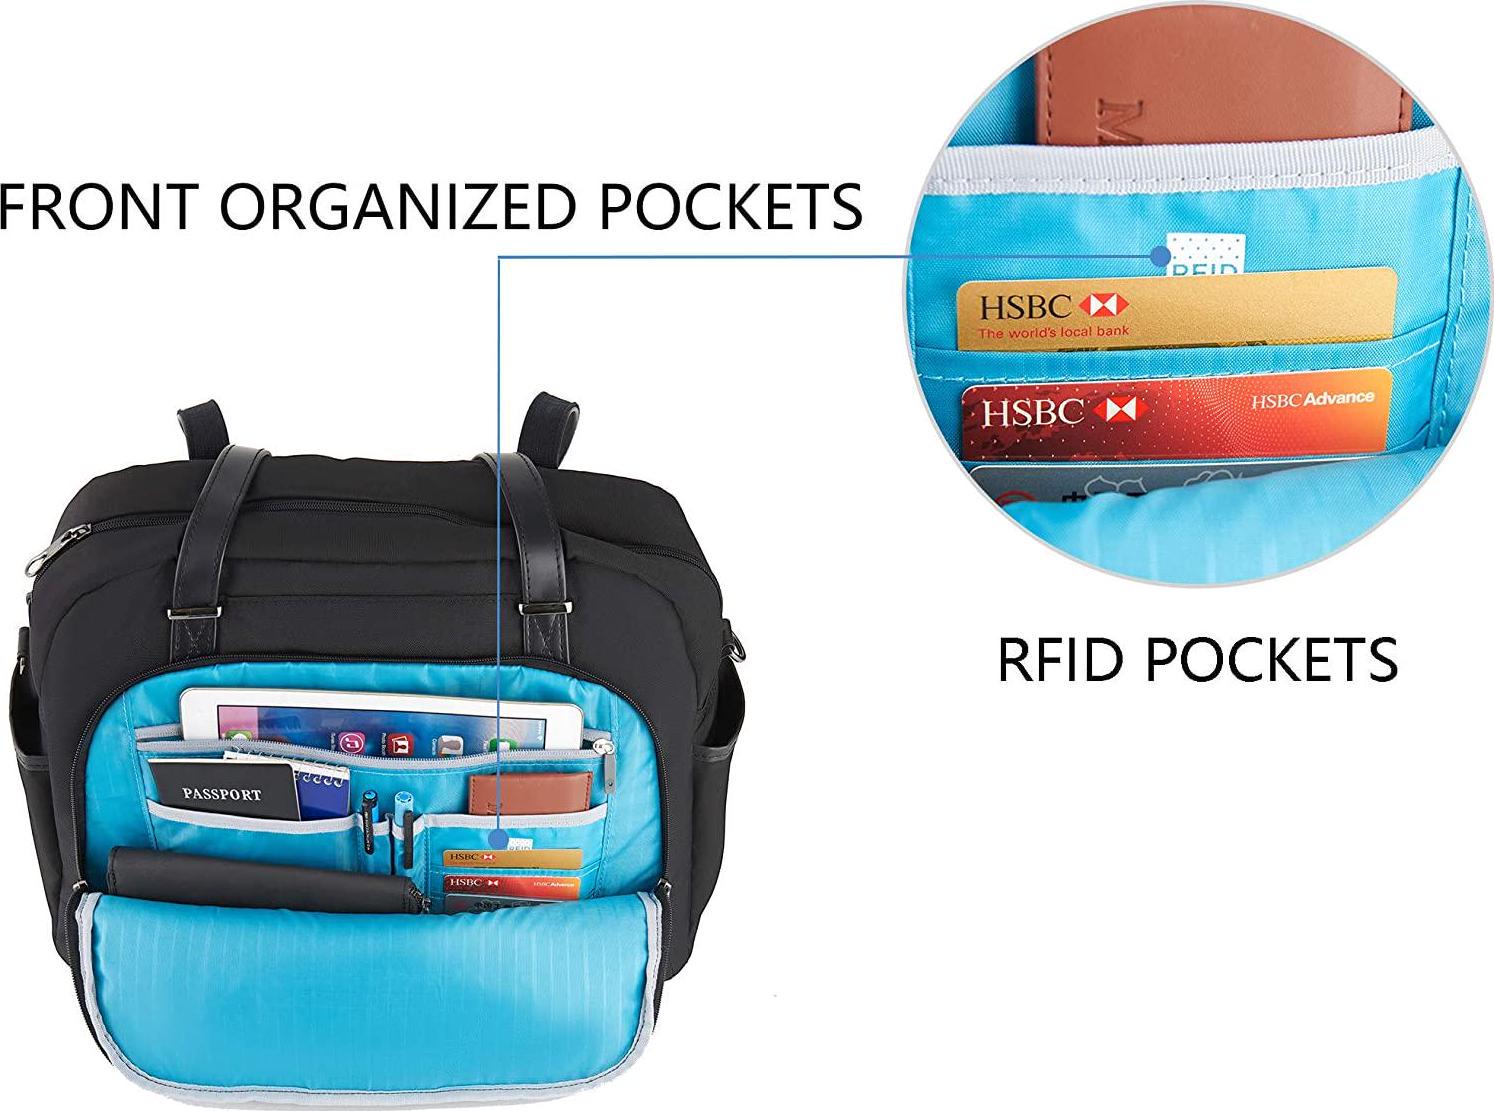 KROSER, KROSER Laptop Tote Bag 15.6 Stylish Shoulder Bag Water-Repellent Large Travel Bag with RFID Pockets for Work/Business/School/College/Women-Black